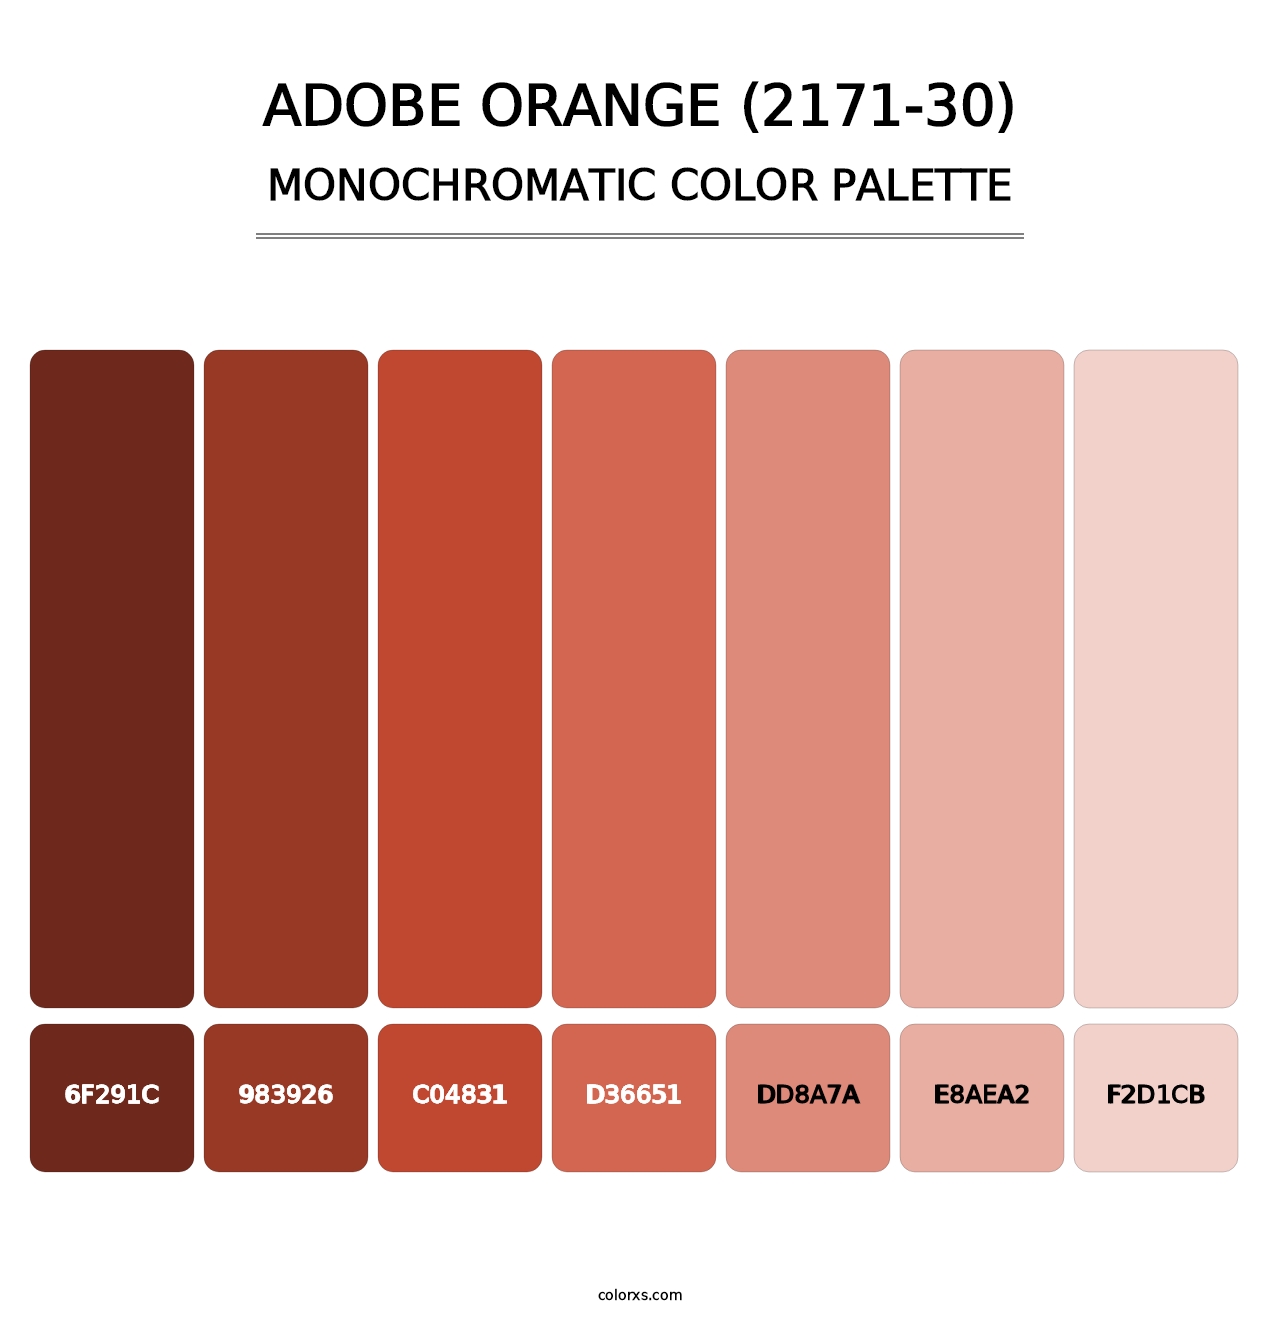 Adobe Orange (2171-30) - Monochromatic Color Palette